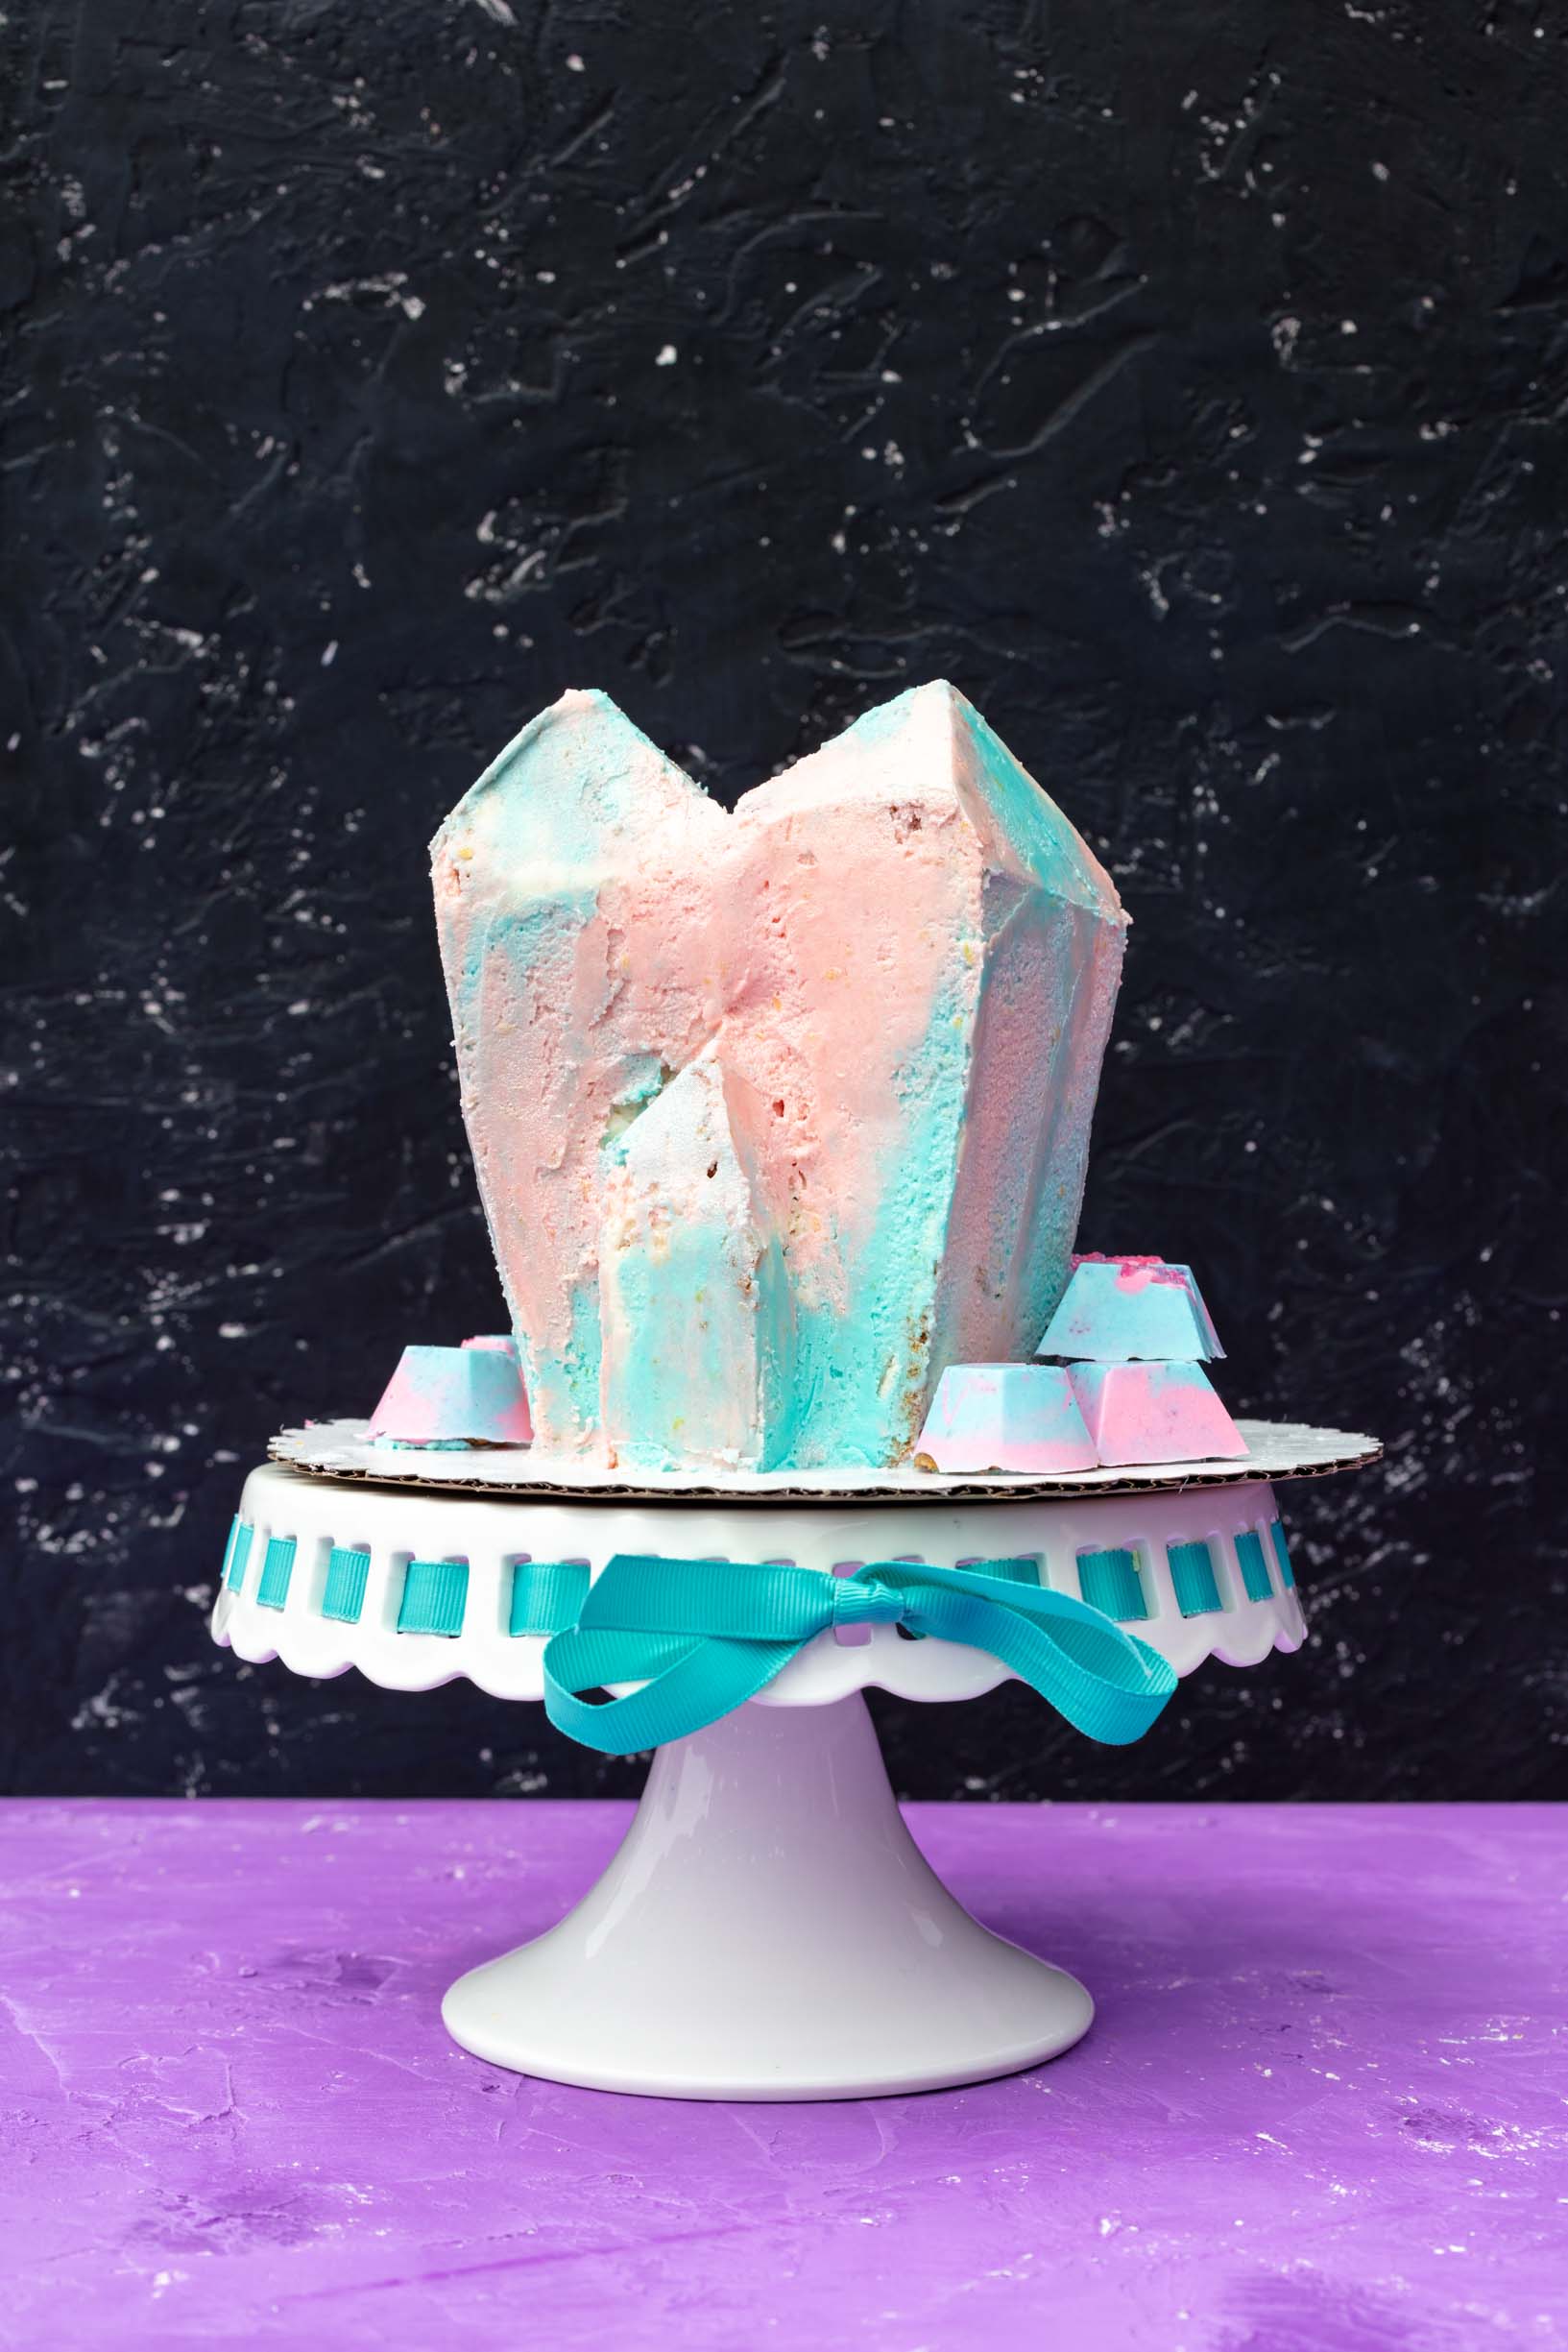 Vegan loquat crystal cluster cake with transgender flag colored lemon frosting